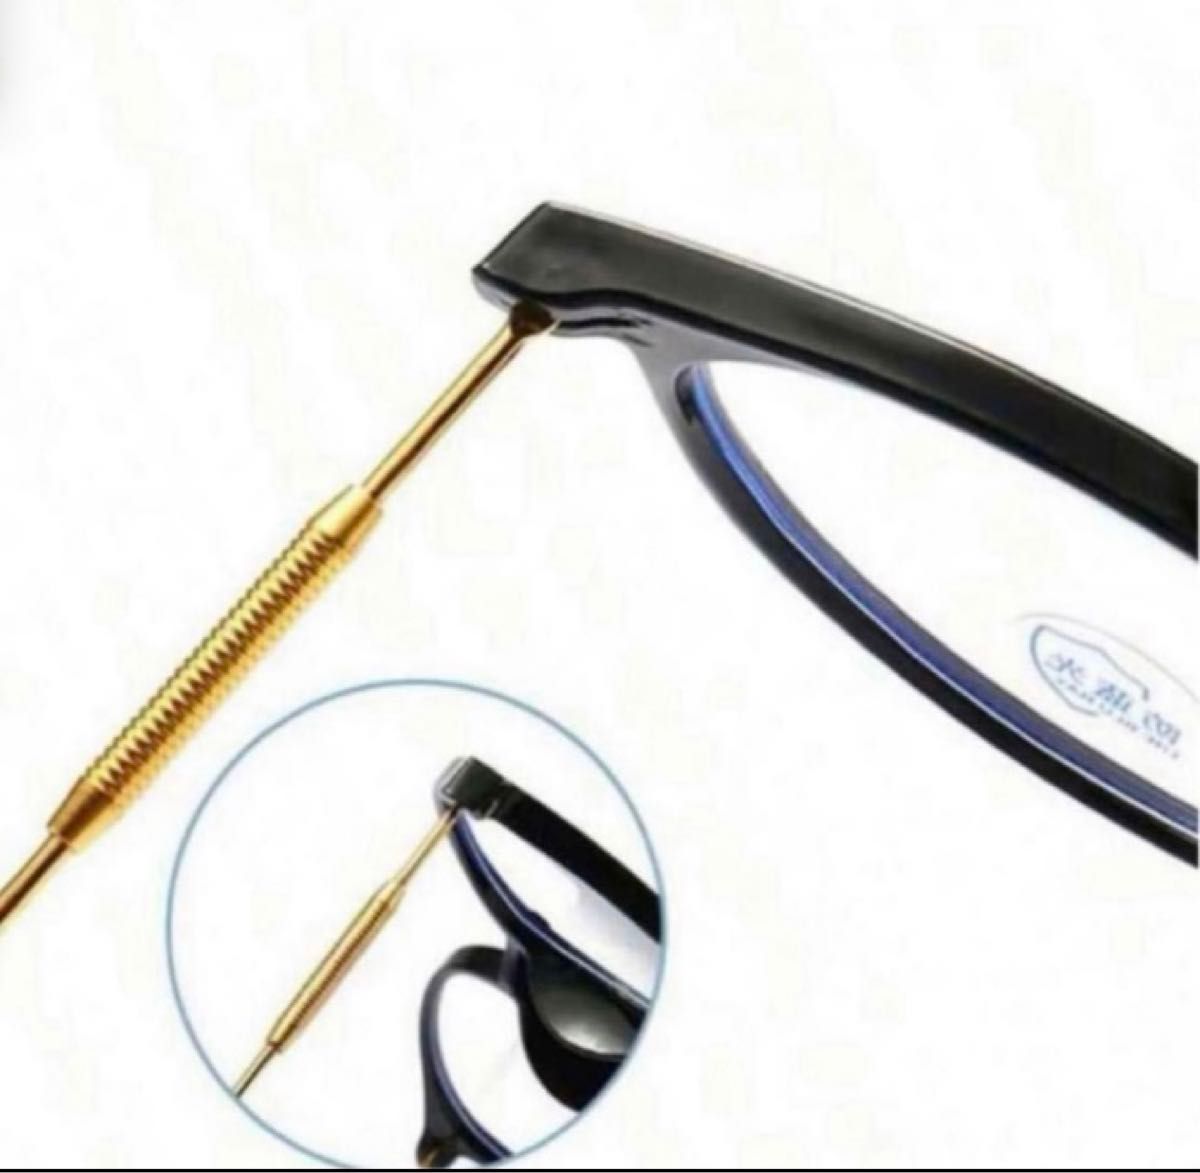 メガネ　老眼鏡+2.0 遠近両用　ブルーライトカット　お買い得ニ本セット 度入りレンズあり